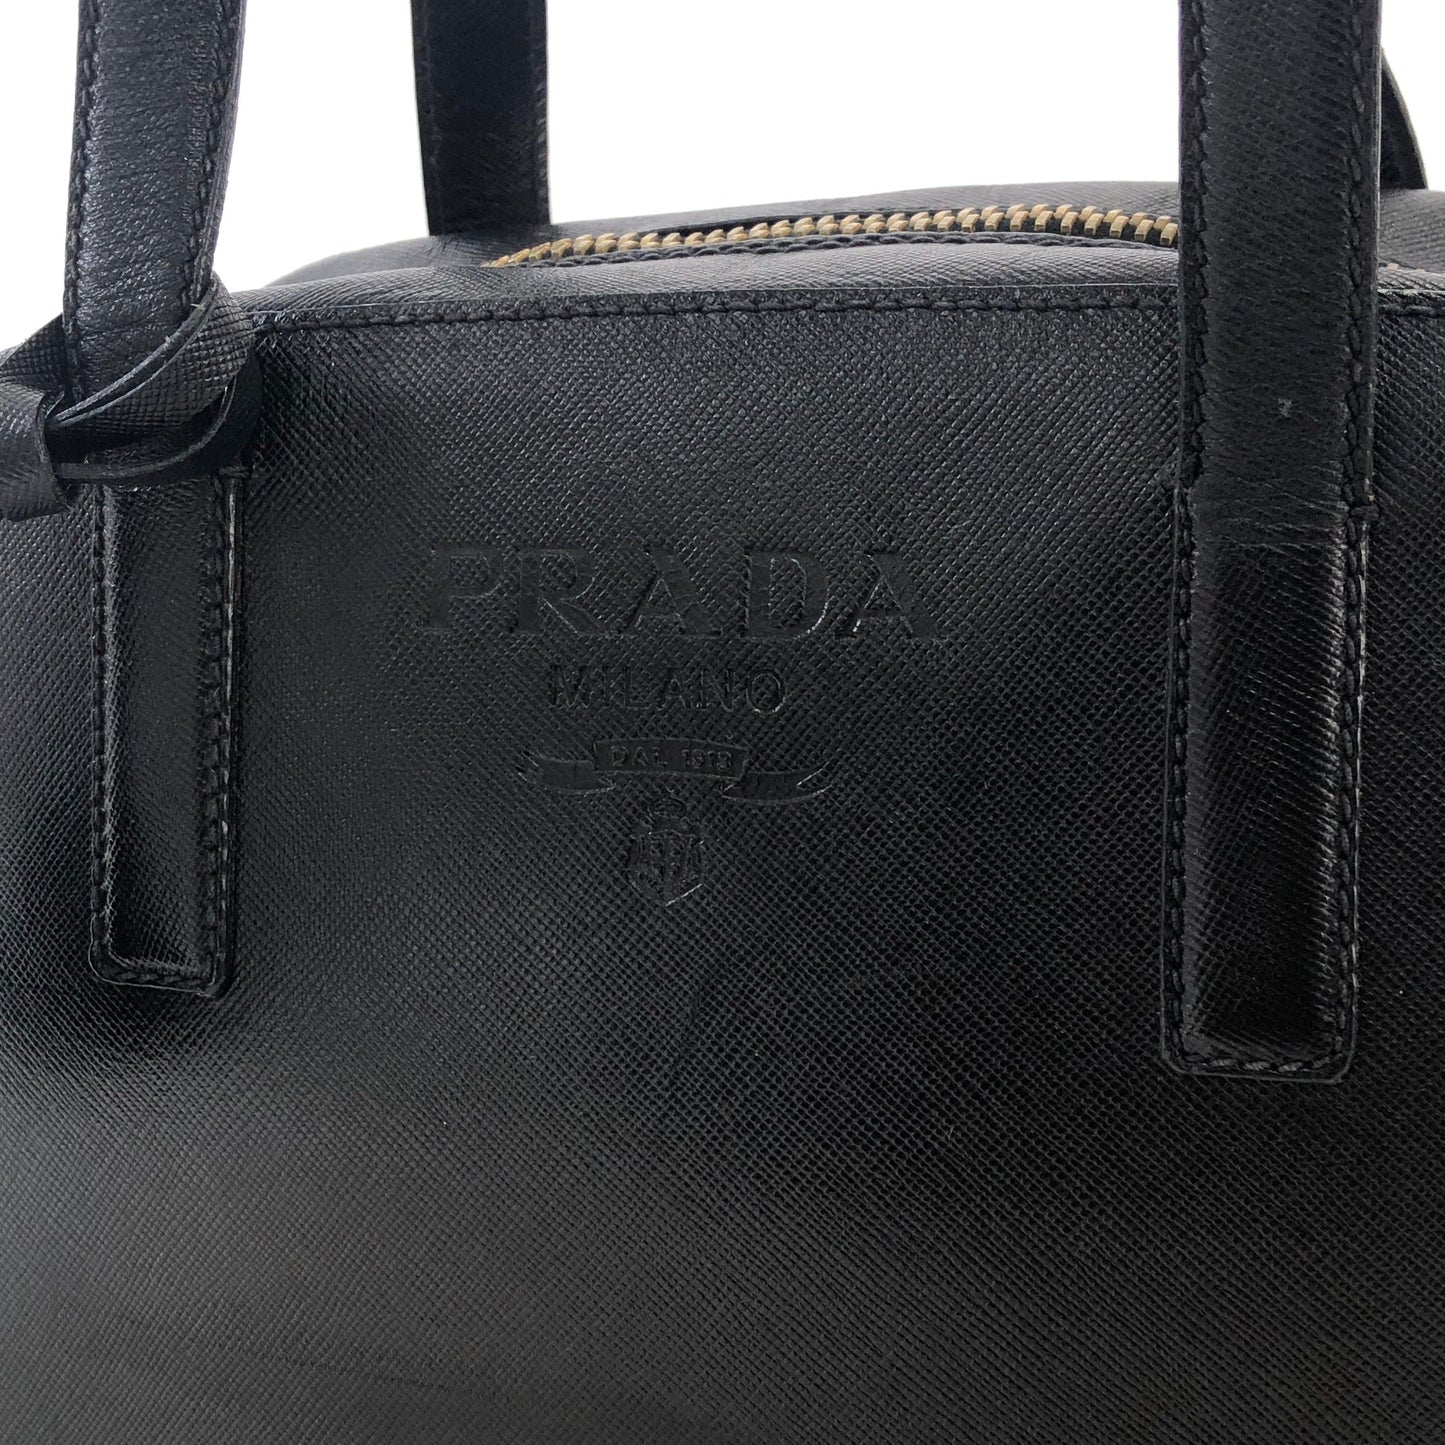 PRADA logoEmbossed  saffiano leather  side lock shoulder bag black Vintage Old 7yy5td